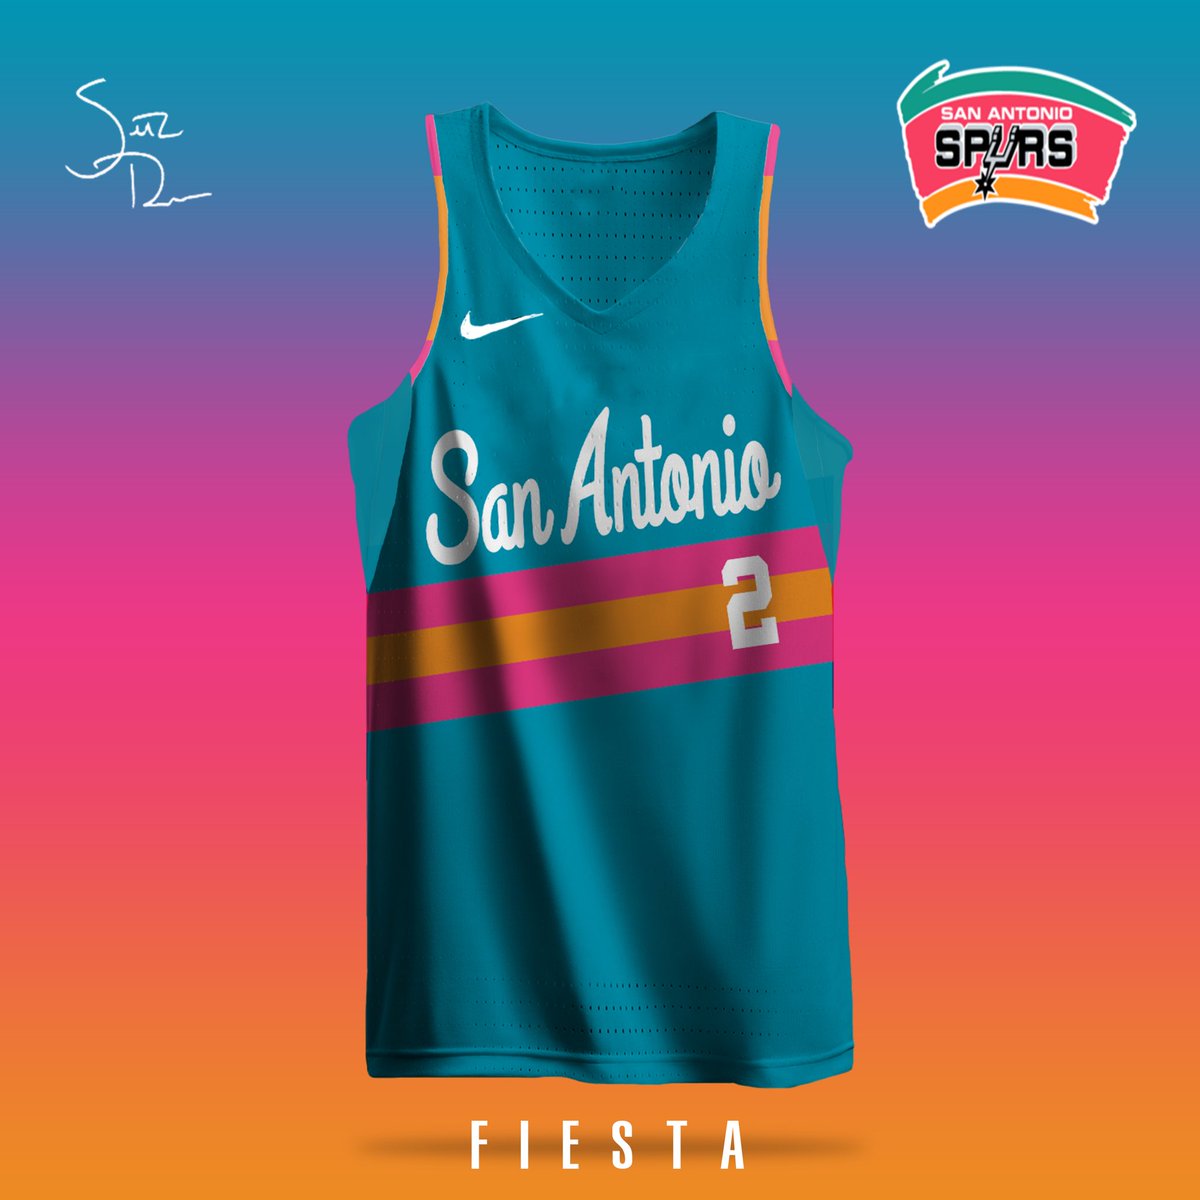 spurs fiesta jersey for sale